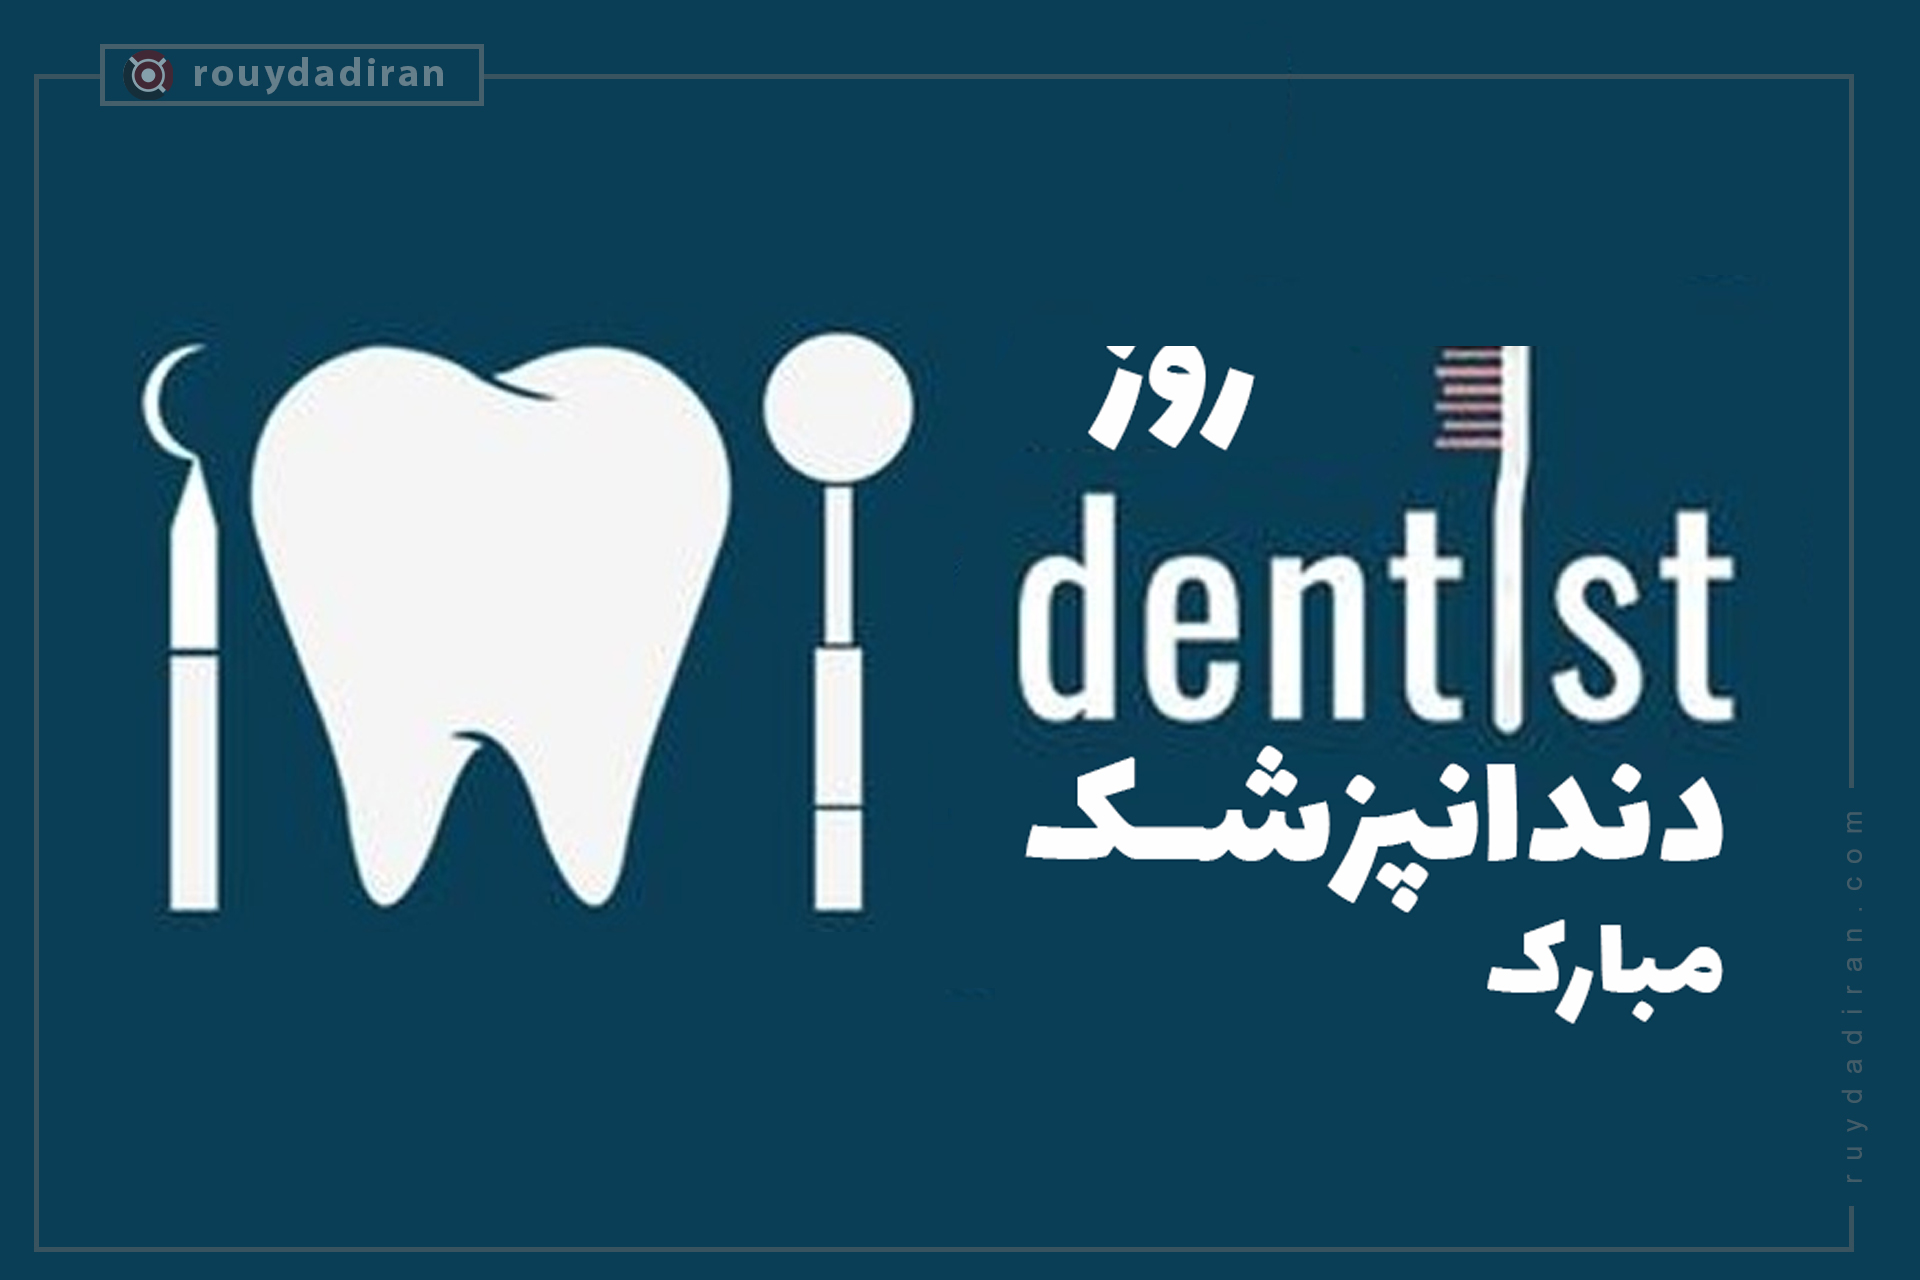 تبریک روز دندانپزشک 1401 در قالب عکس برای پروفایل و استوری